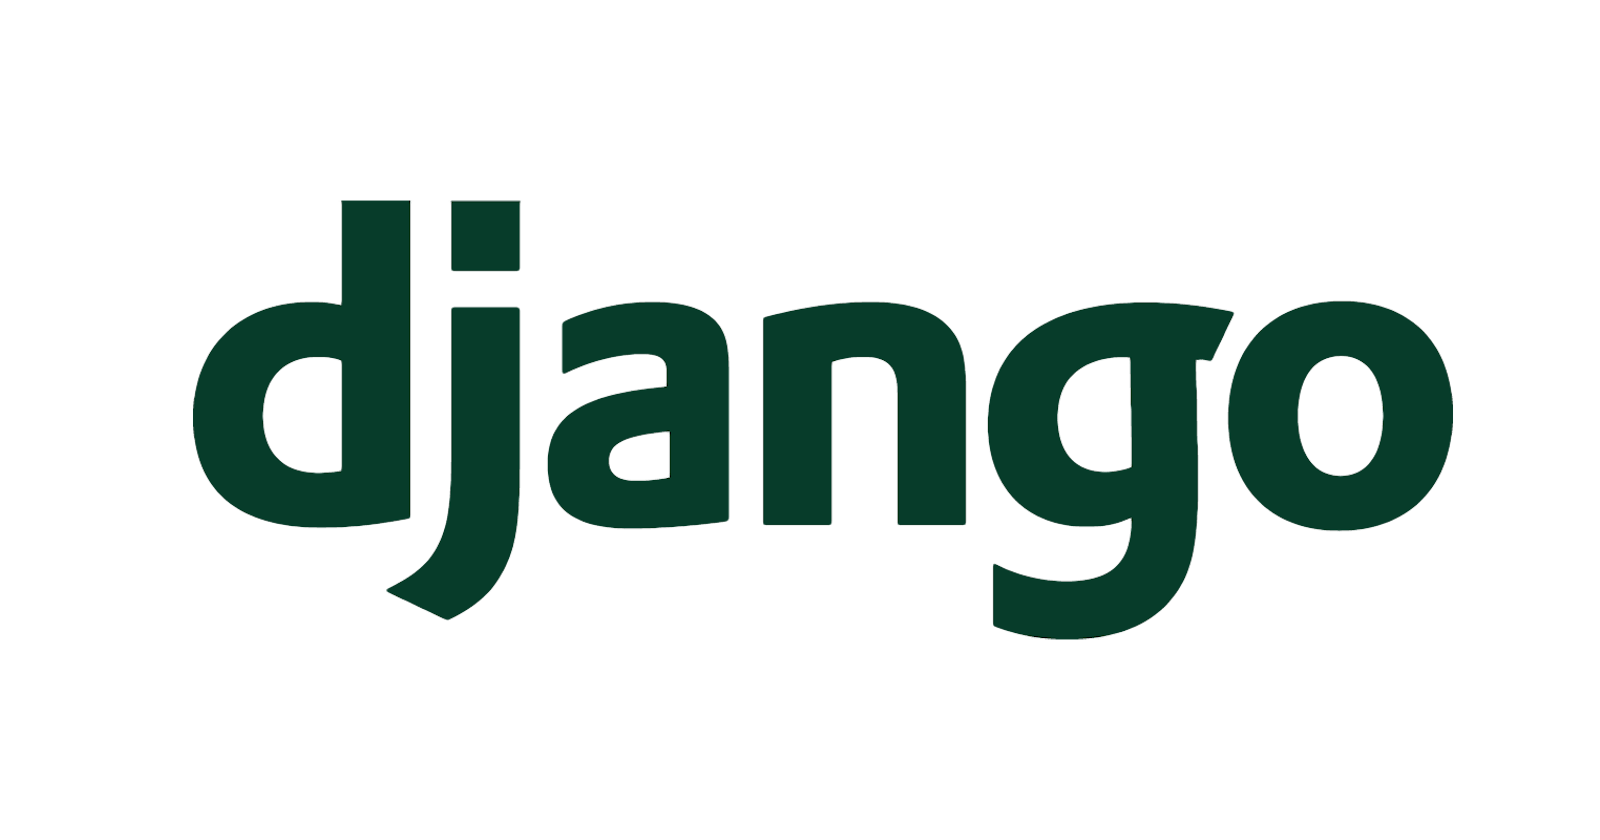 Extending Django's default User Model